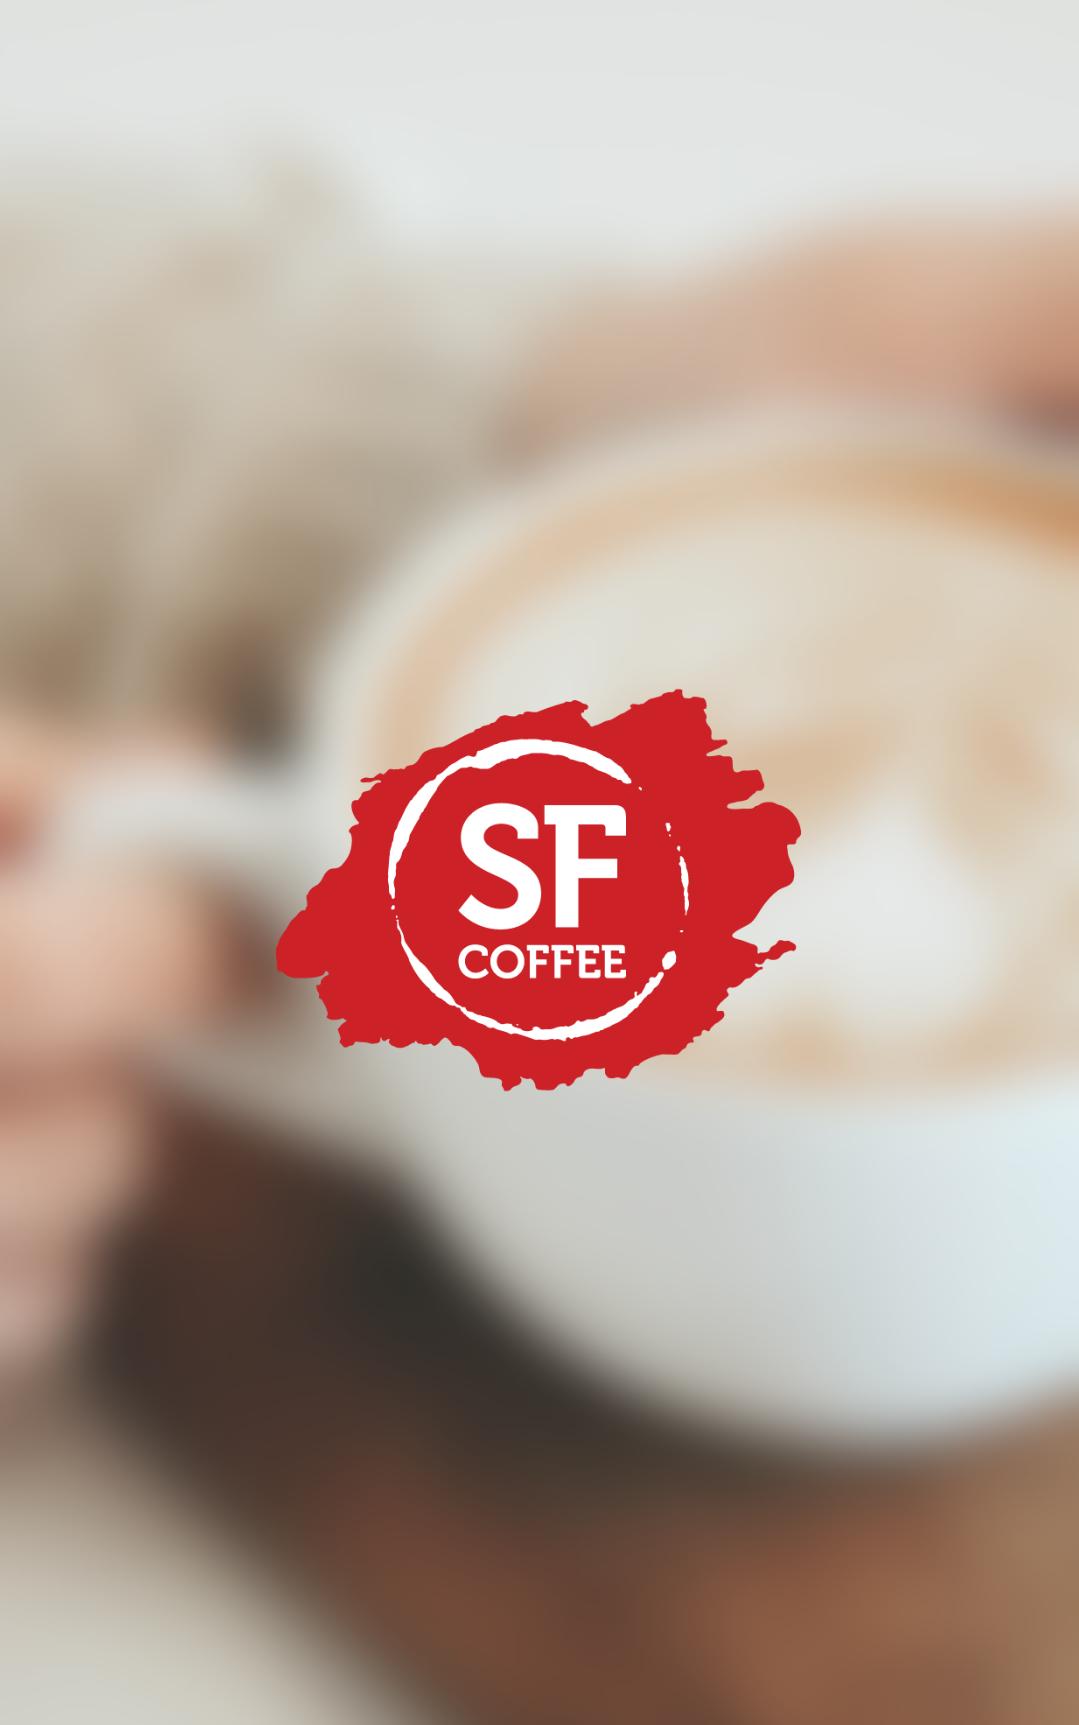 Кофе СФ. Приложение кофе. Sedelice Coffee приложение. Кофи для платных подписчиков. Правда кофе приложение для андроид